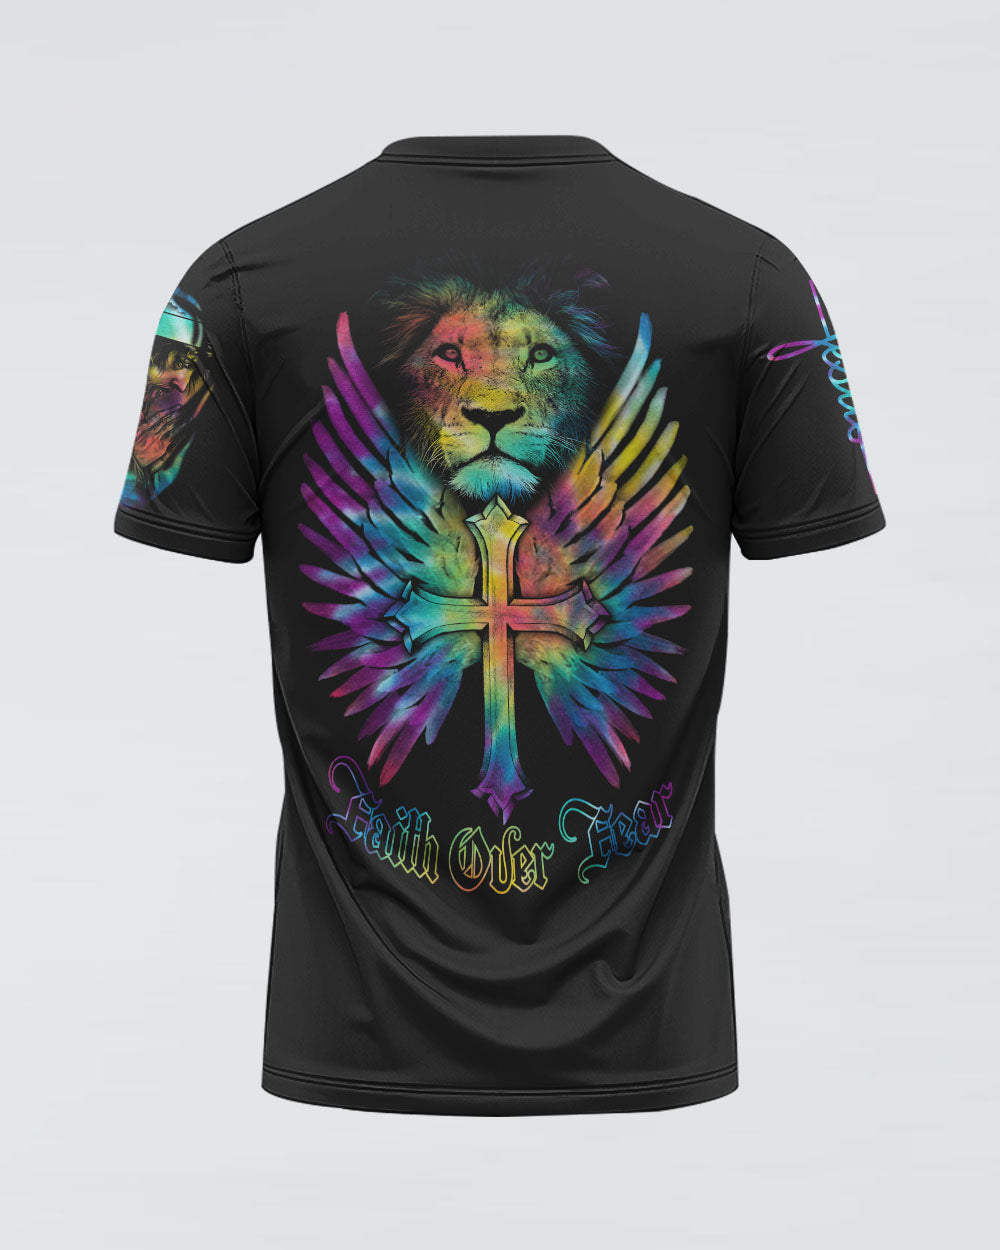 Faith Over Fear Lion Cross Colorful Women's Christian Tshirt